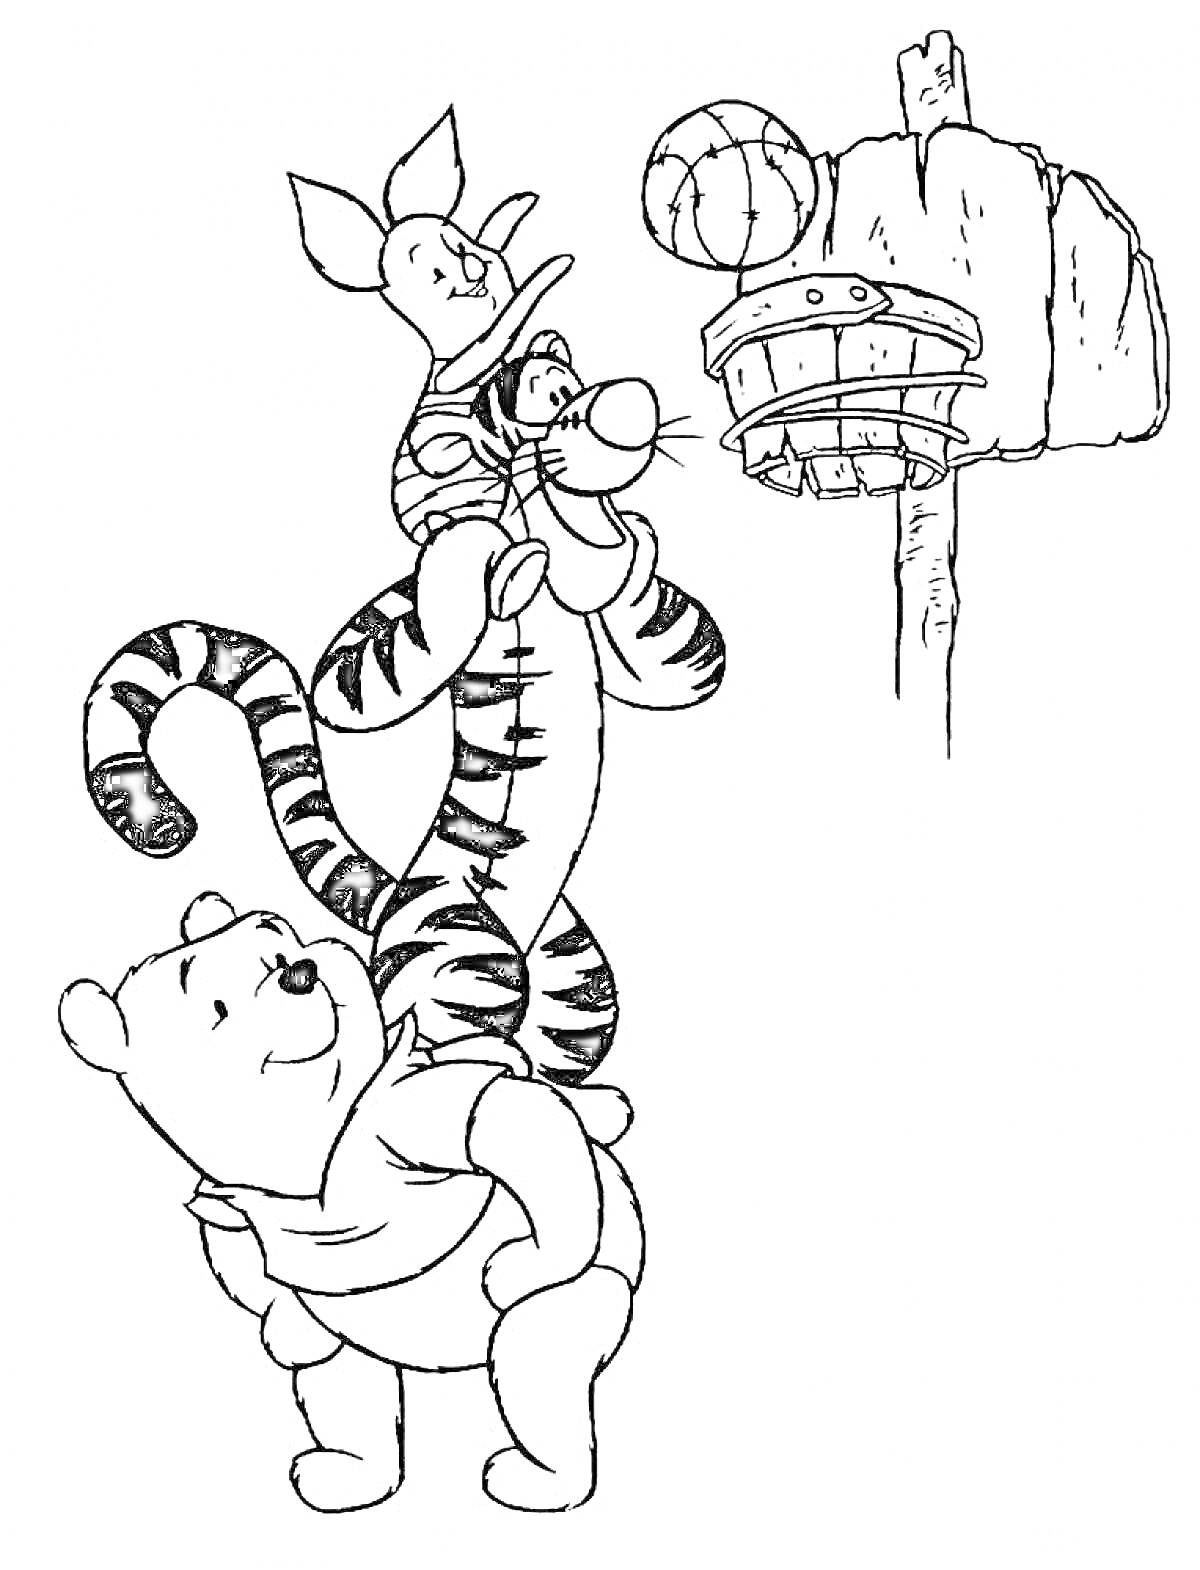 Раскраска Медвежонок, тигр и поросёнок играют в баскетбол, мяч летит в кольцо, установленное на столбе